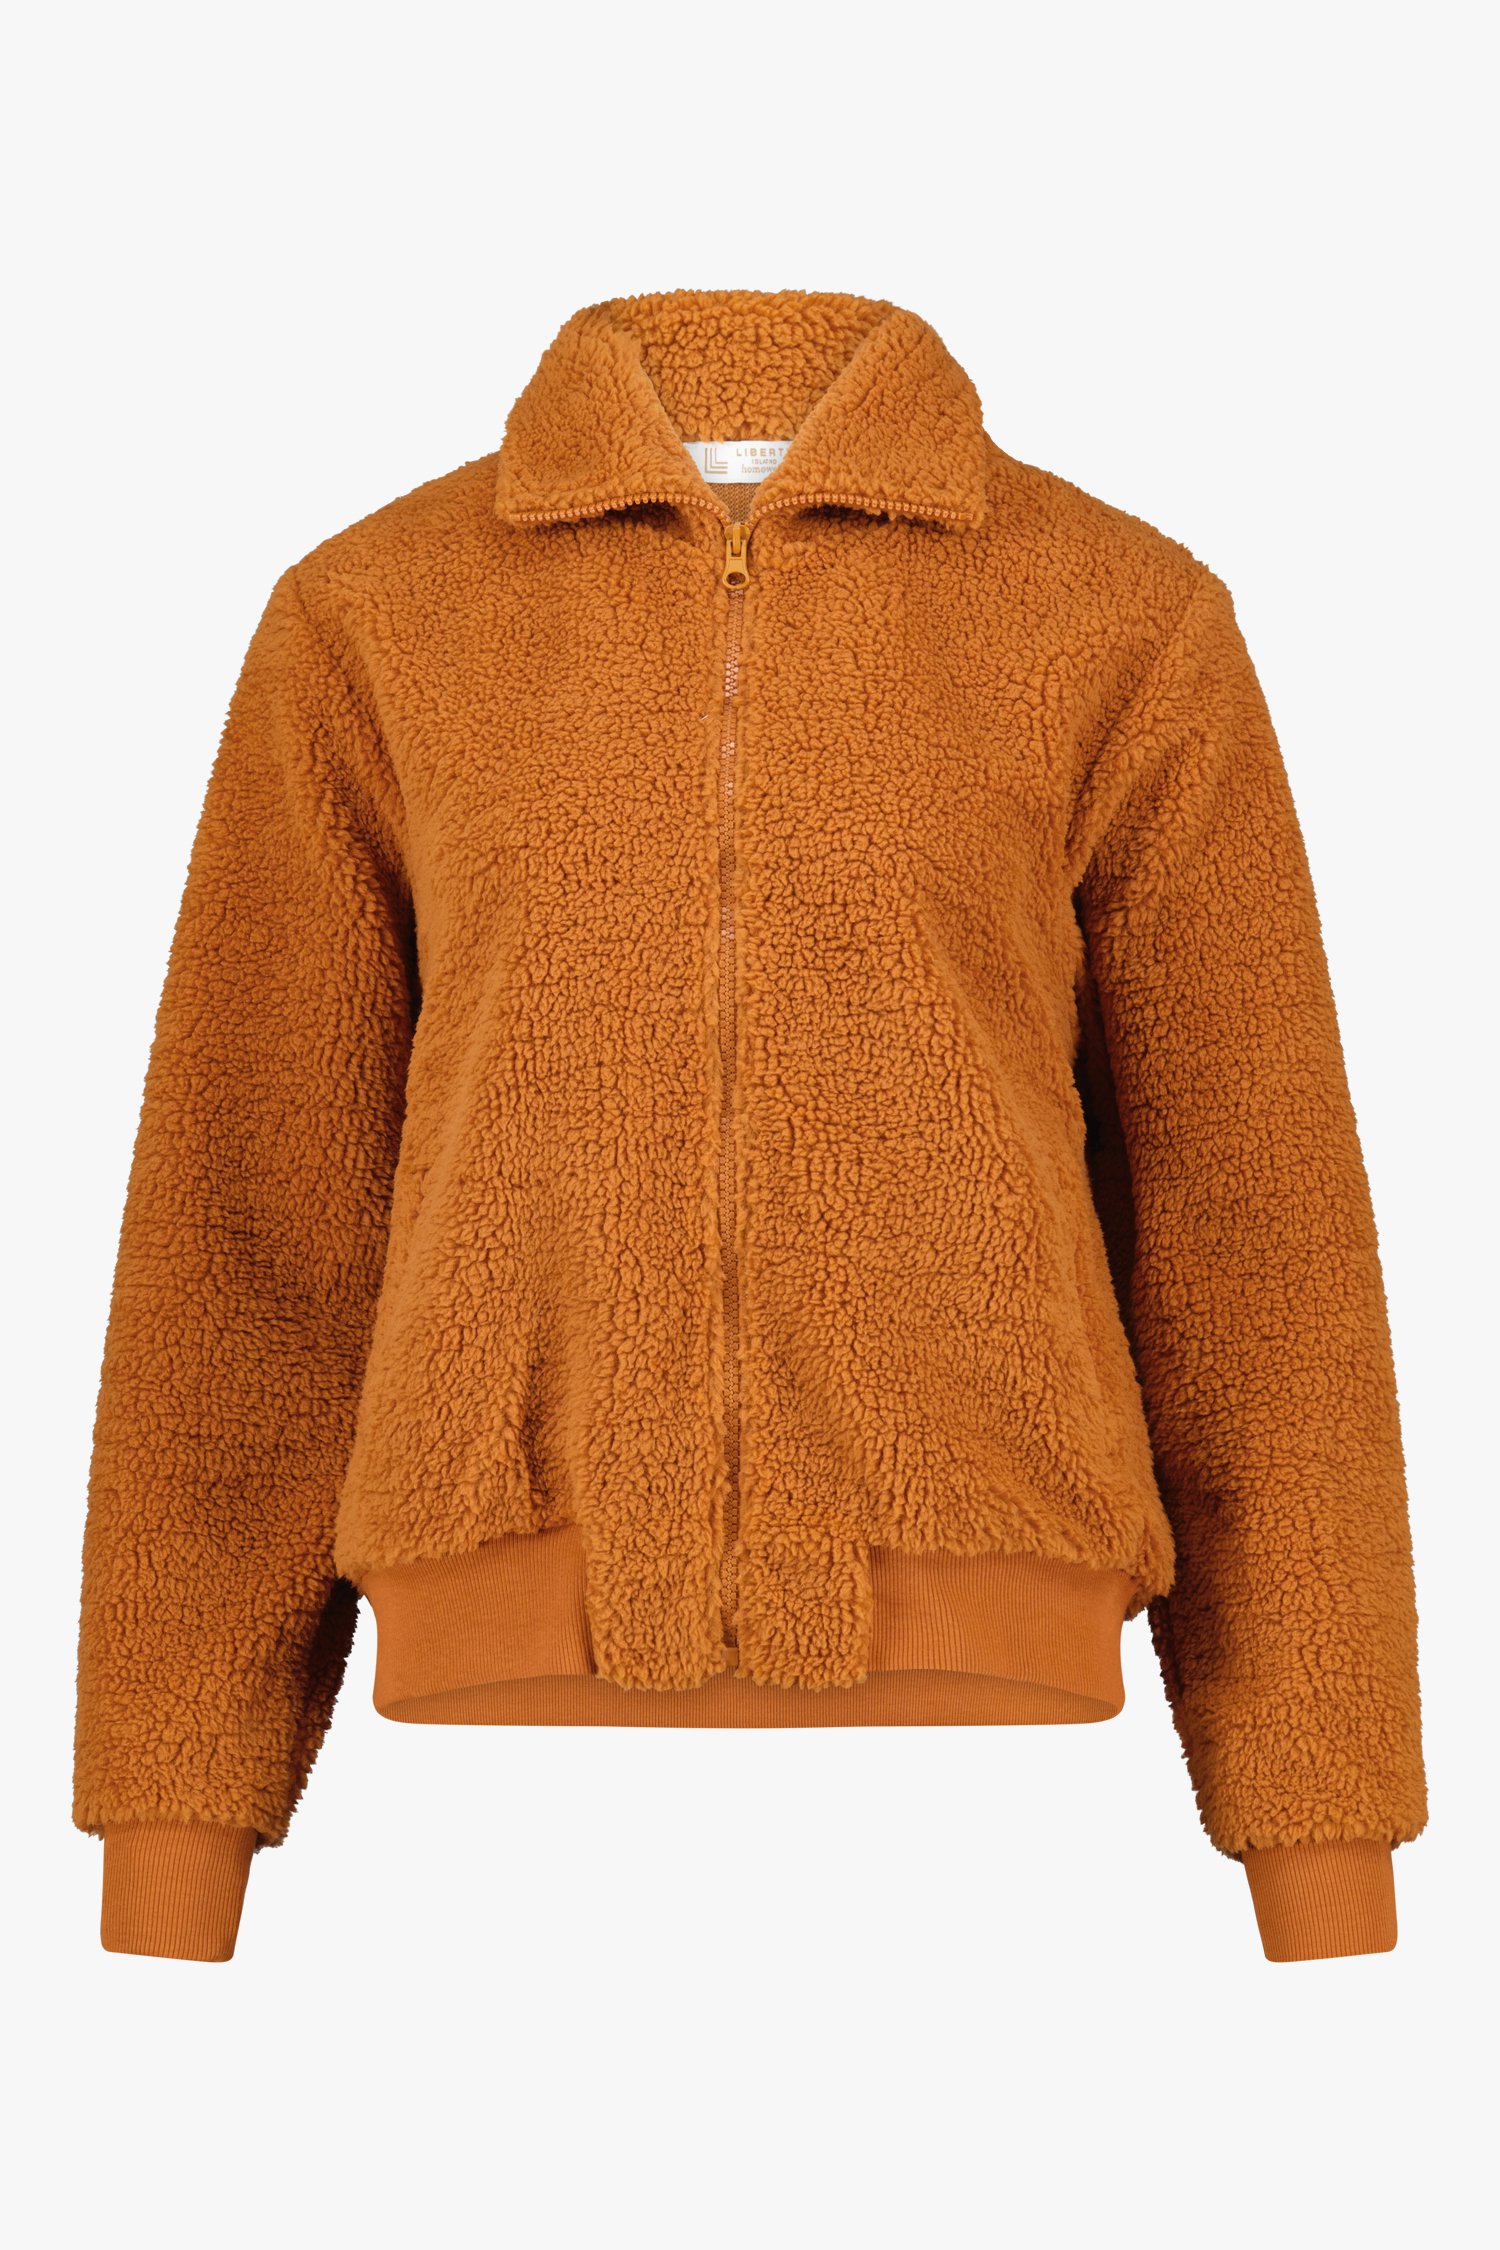 Oranje teddy jas van Liberty Island homewear voor Dames